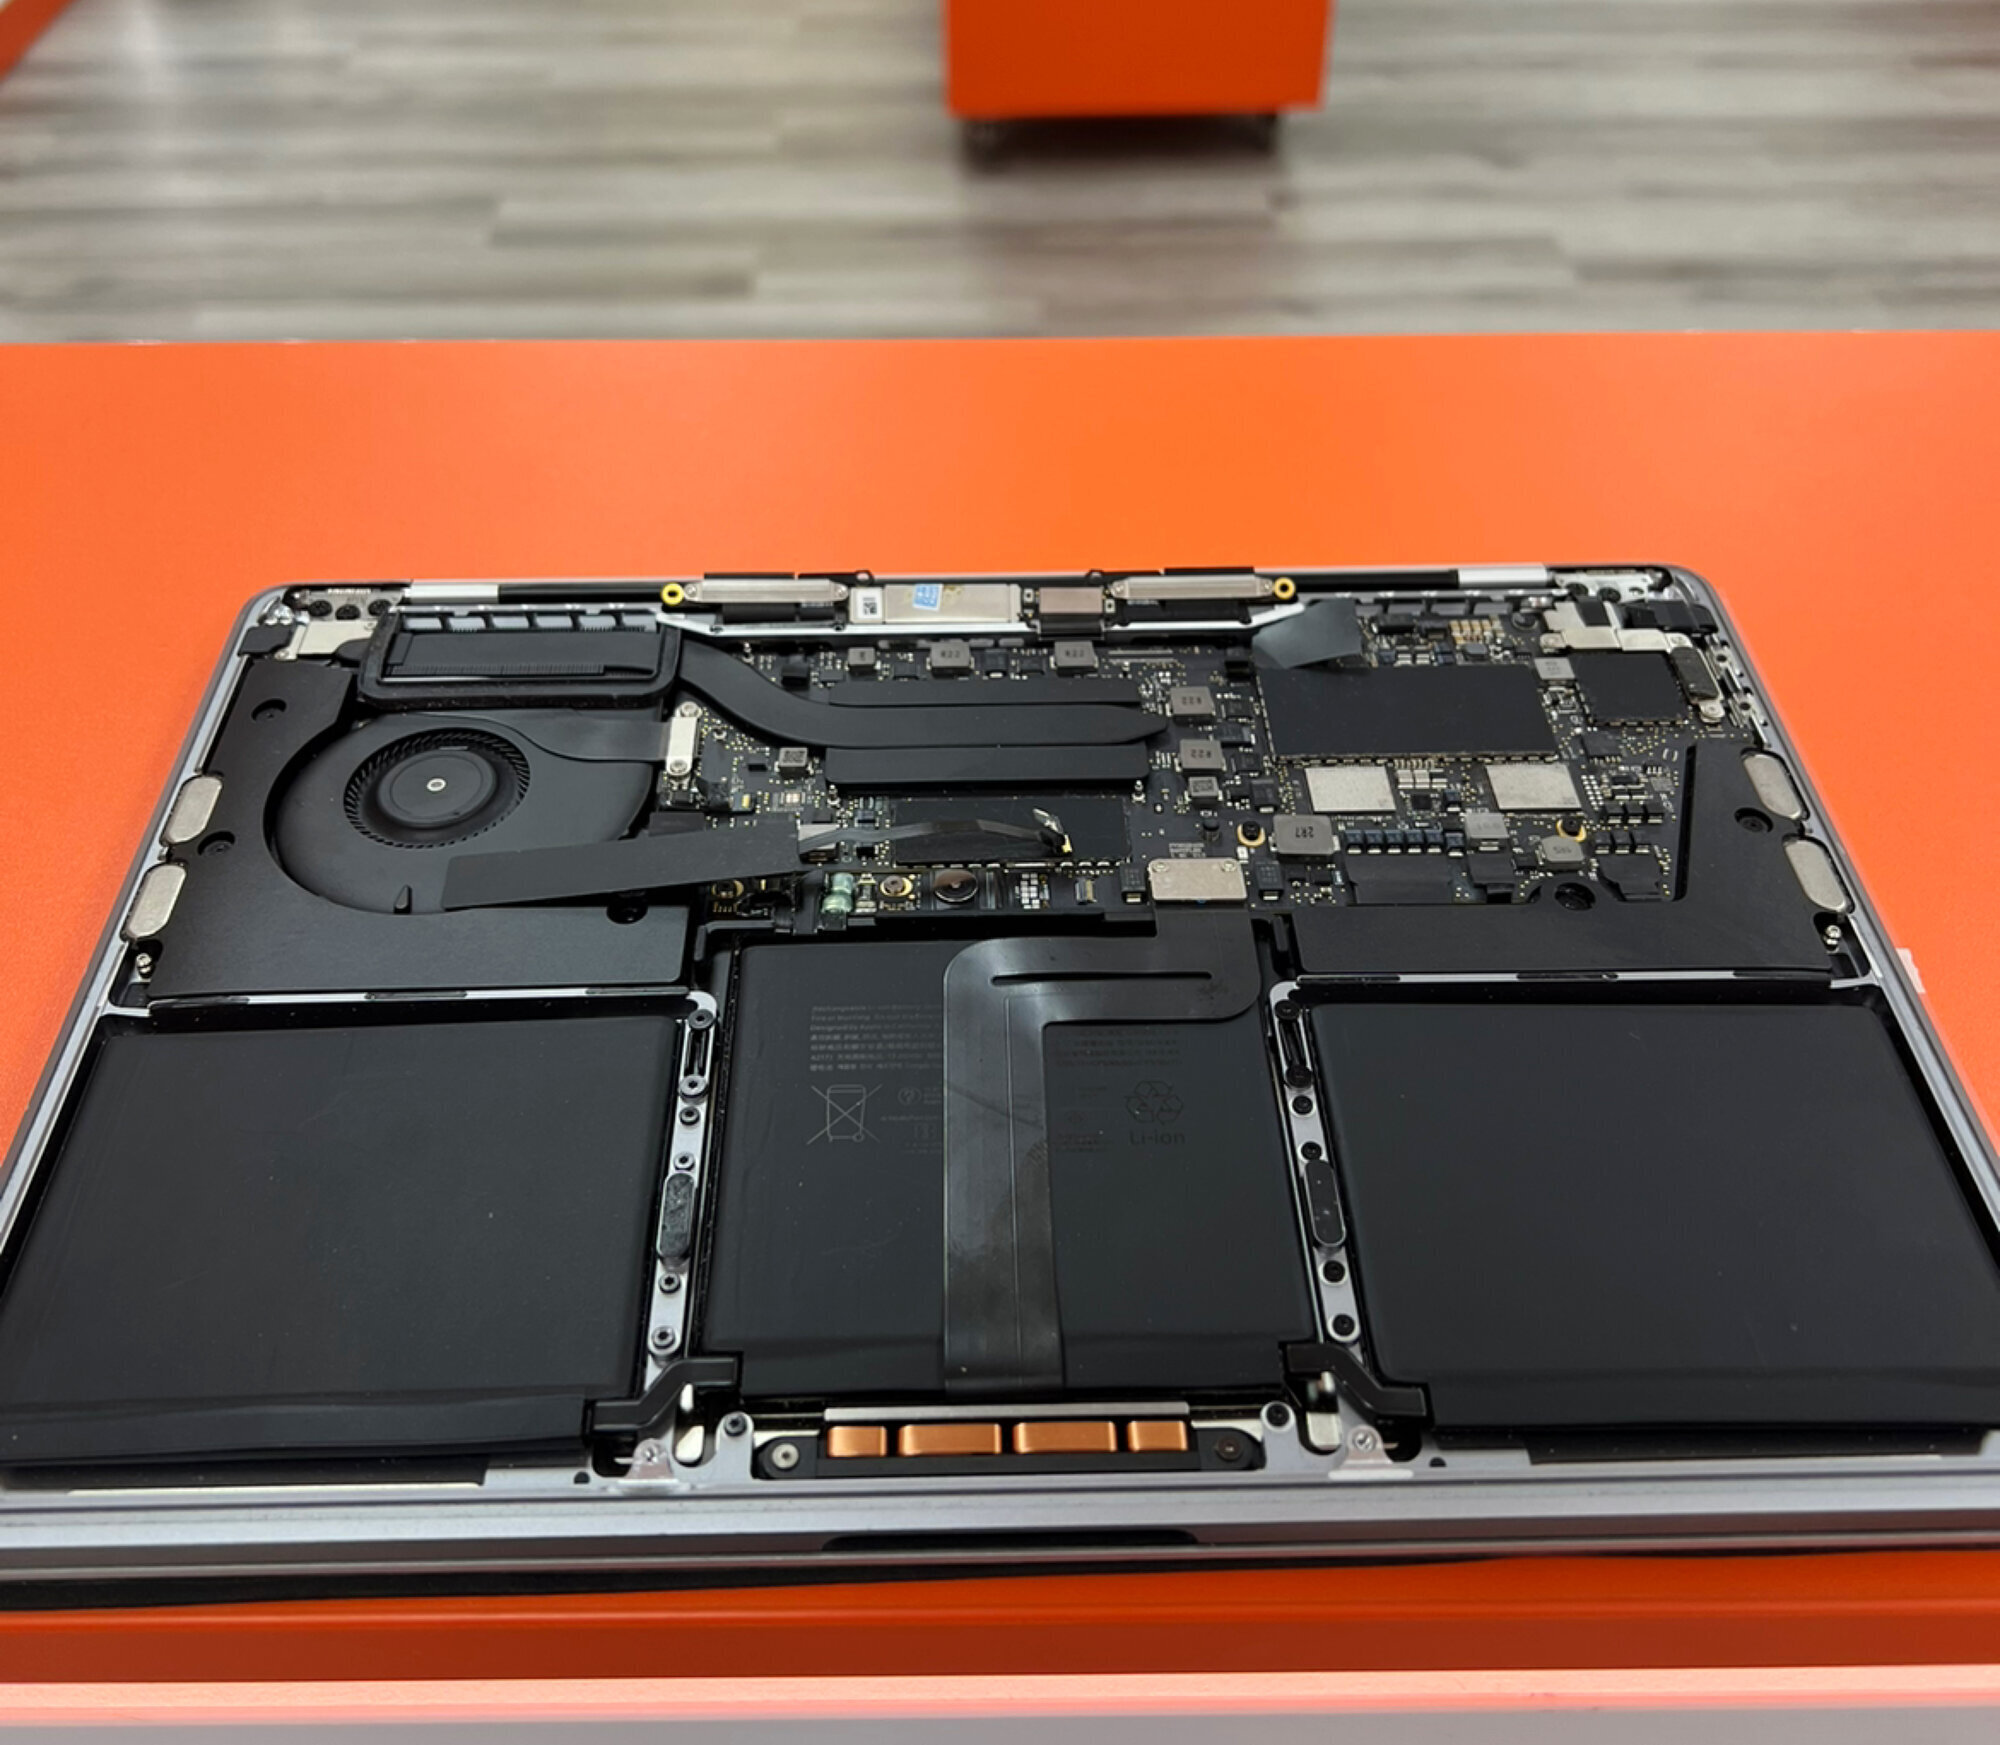 Images Tech Revive - Phone | Laptop Buy Sell Repair Bristol